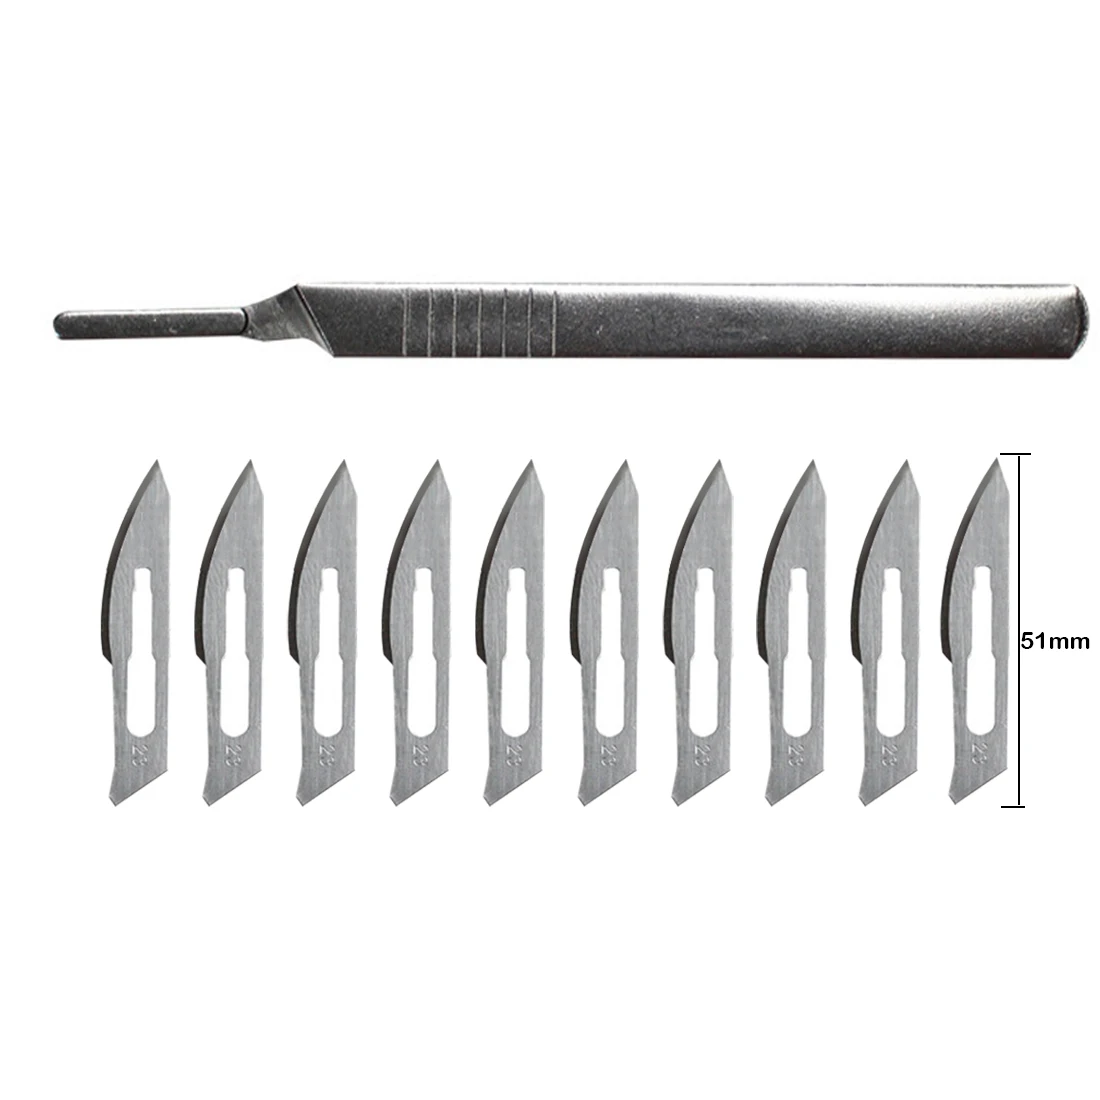 Ручные инструменты 1 шт., металлическая нержавеющая рукоятка и 10 шт., лезвия, нож для резки древесины, бумаги, рукоделие, ручка, ножи, Гравировальный нож, печатная плата, ремонт телефона